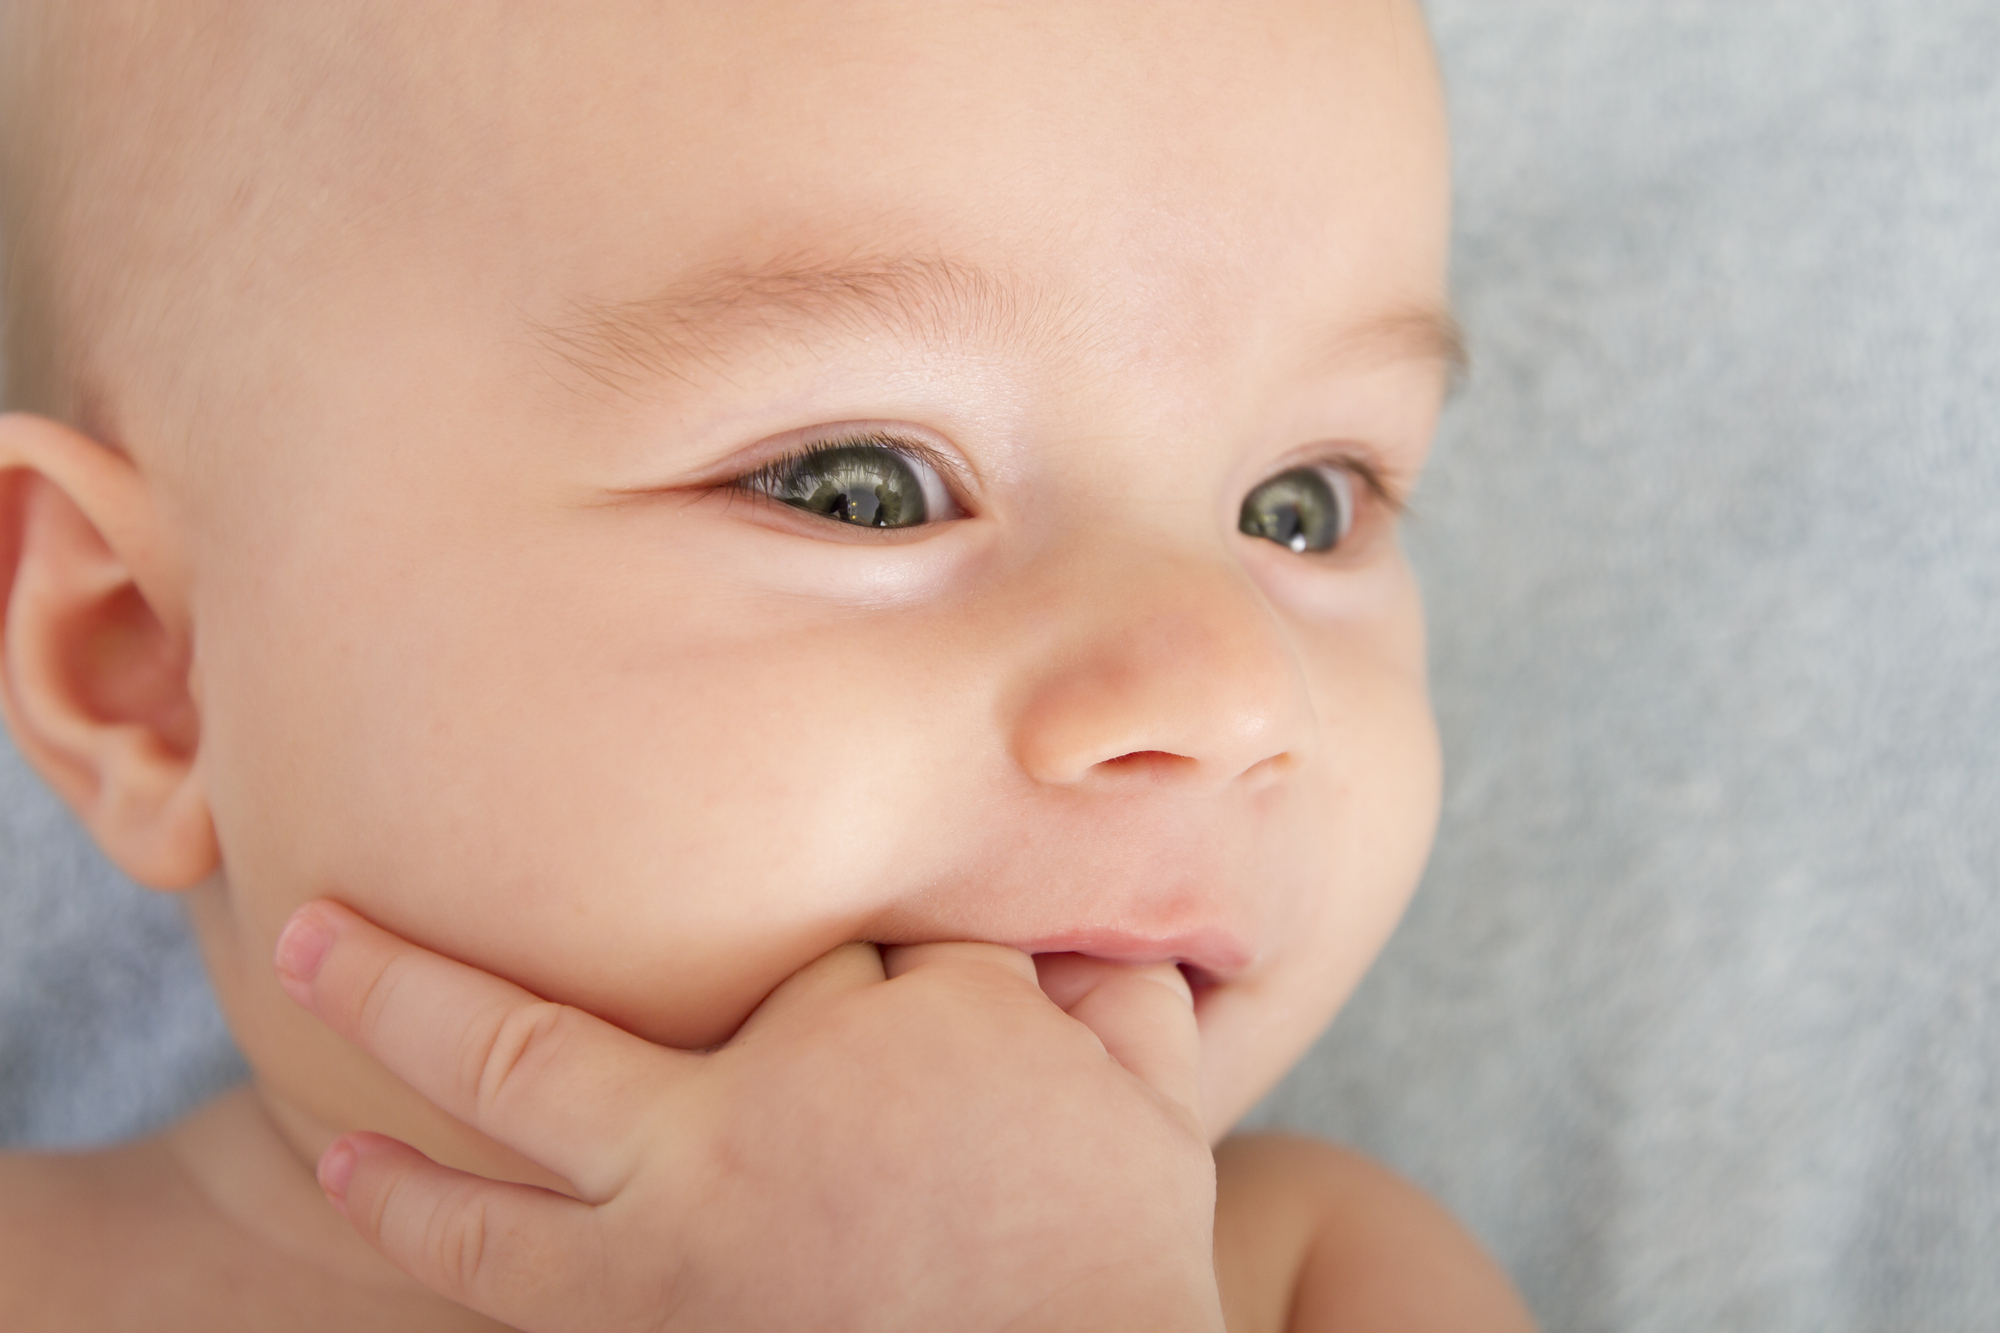  Режутся зубки у ребенка: как помочь и что делать нельзя 